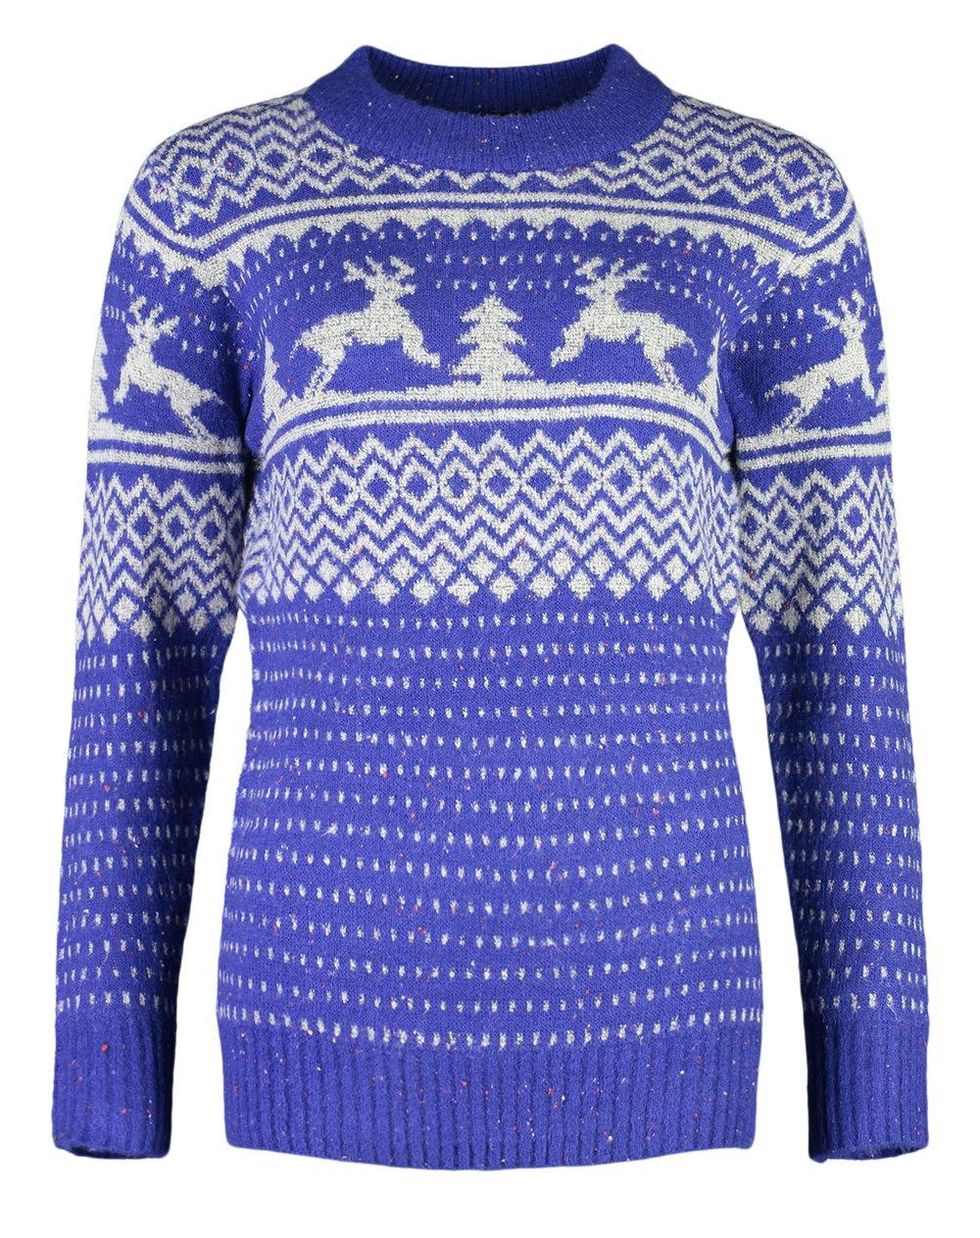 booho maglione norvegese tendenza moda inverno 20202021